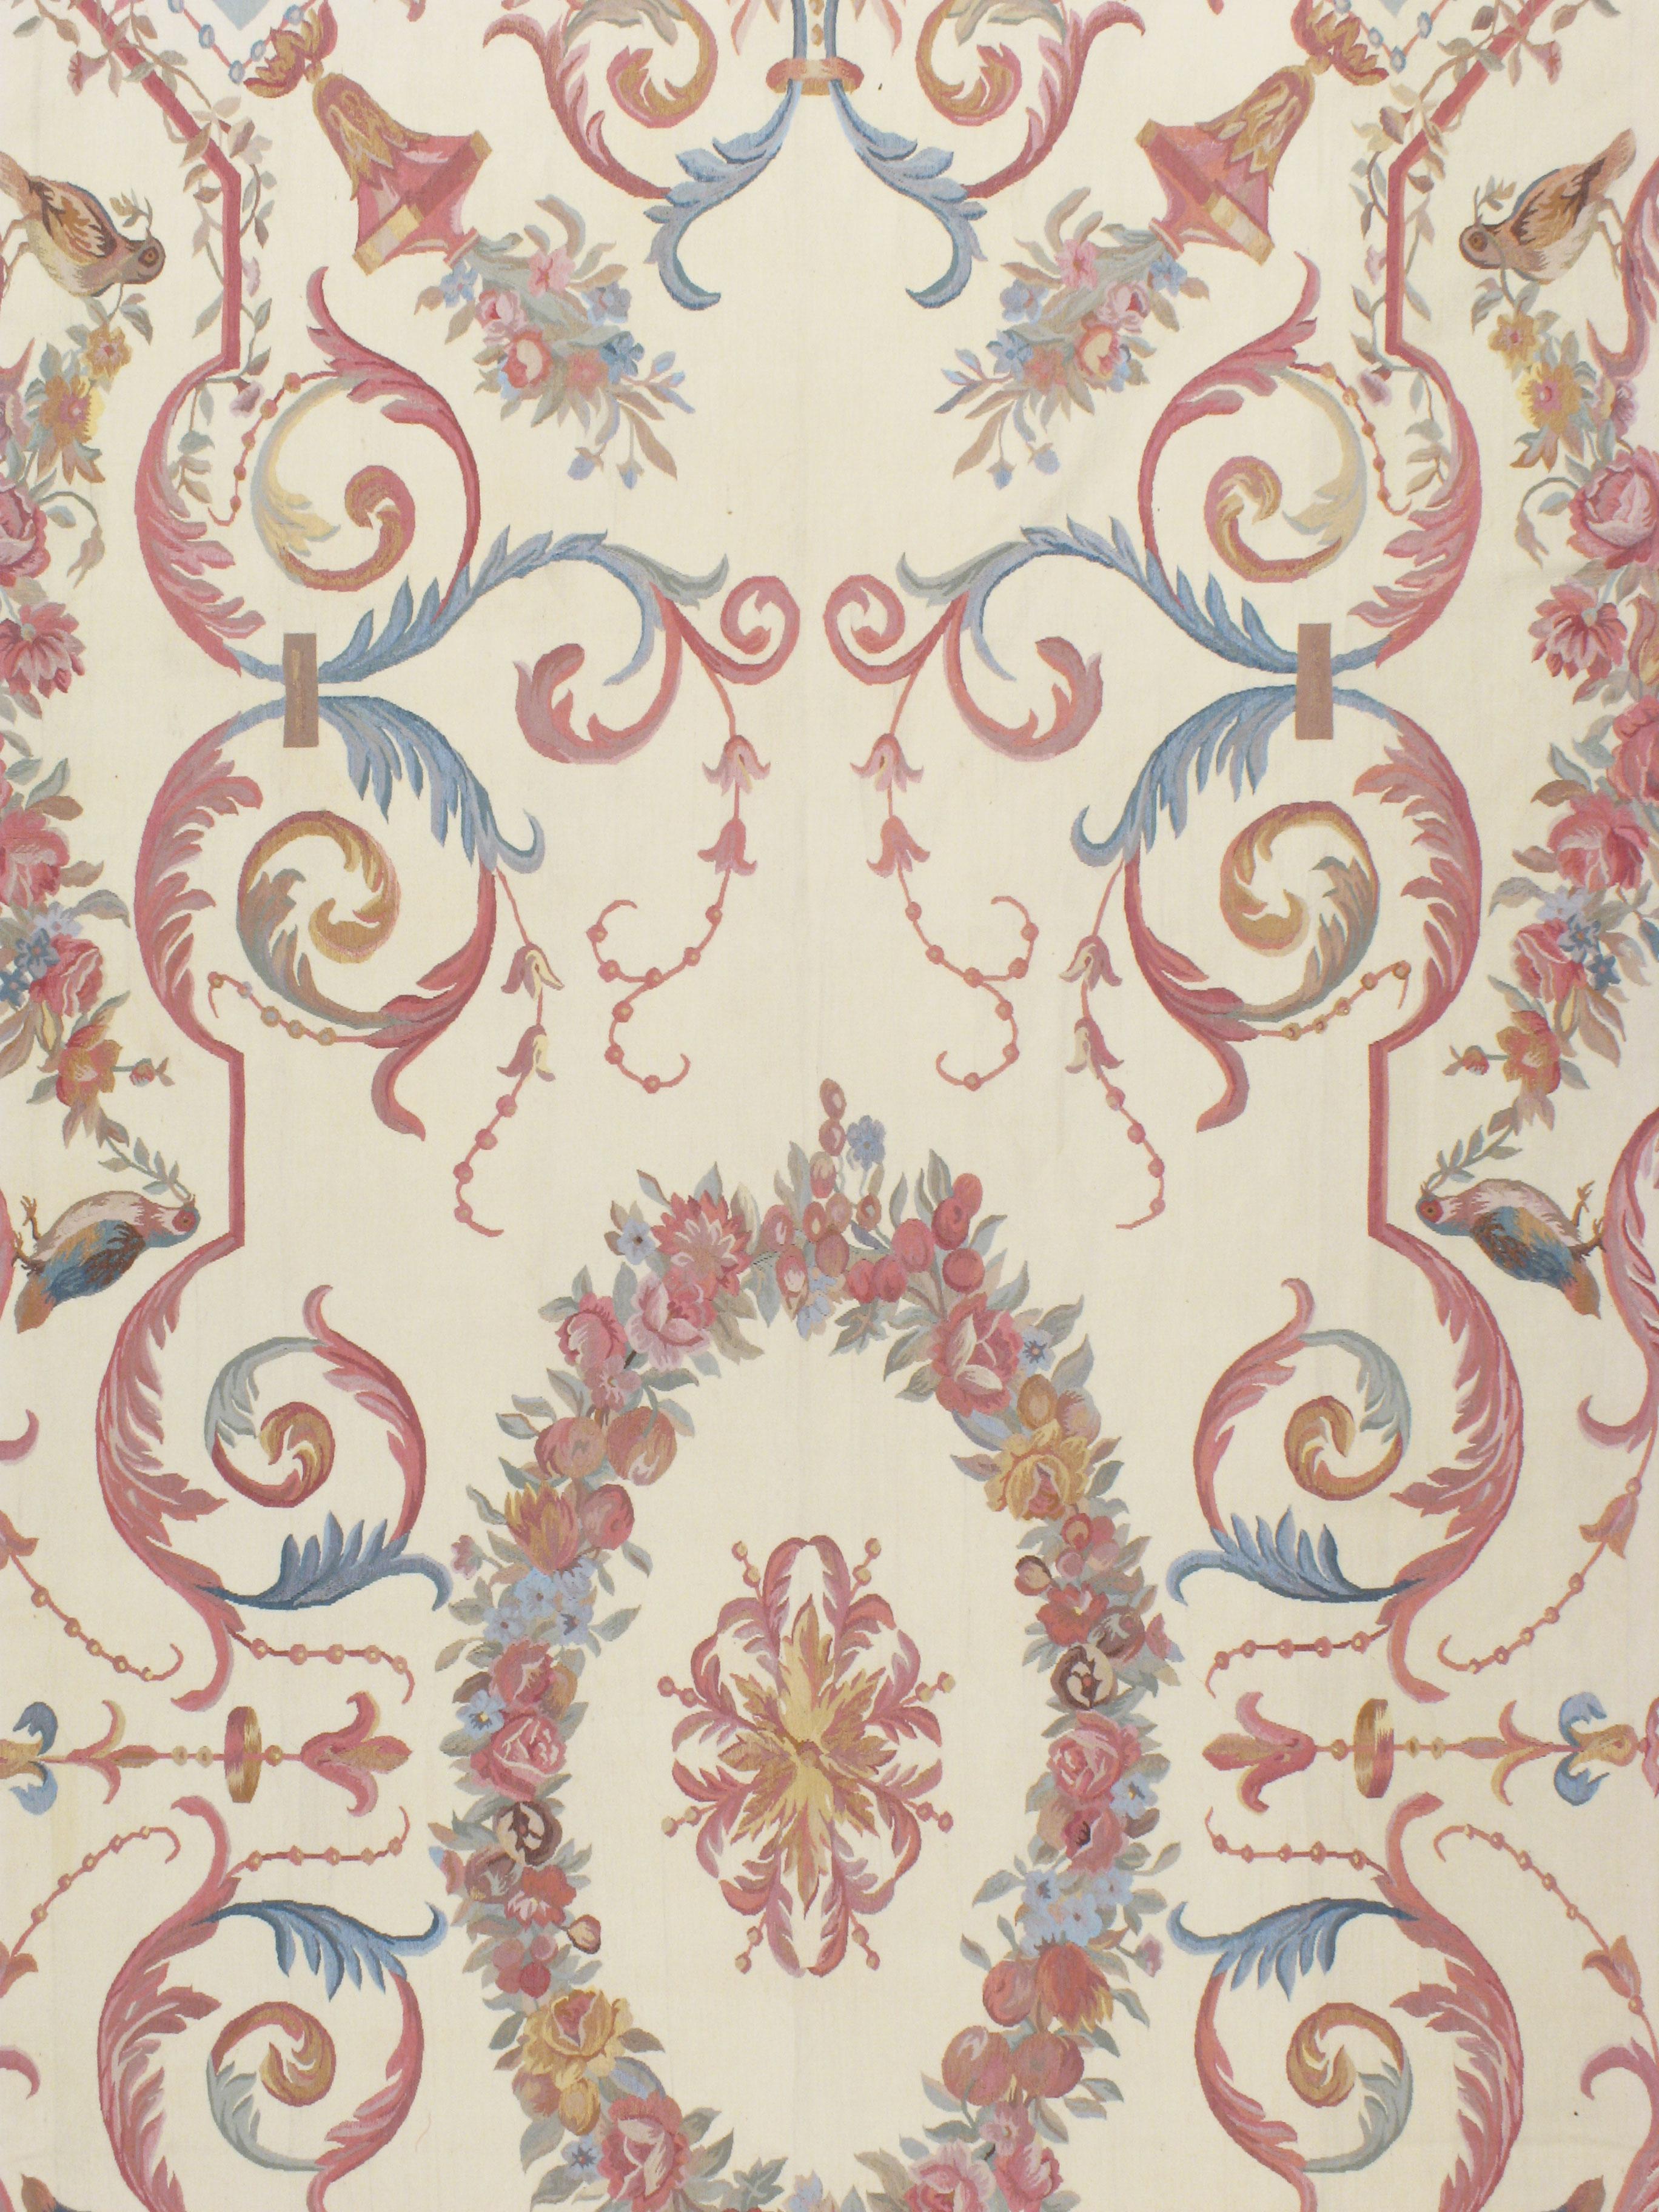 Une reproduction contemporaine faite à la main de l'intemporel tapis français d'Aubusson dans le style de Louis XV. Le motif floral est composé de couleurs telles que le rose, le bleu et le gris, sur un fond ivoire. Grandeur dans la taille et